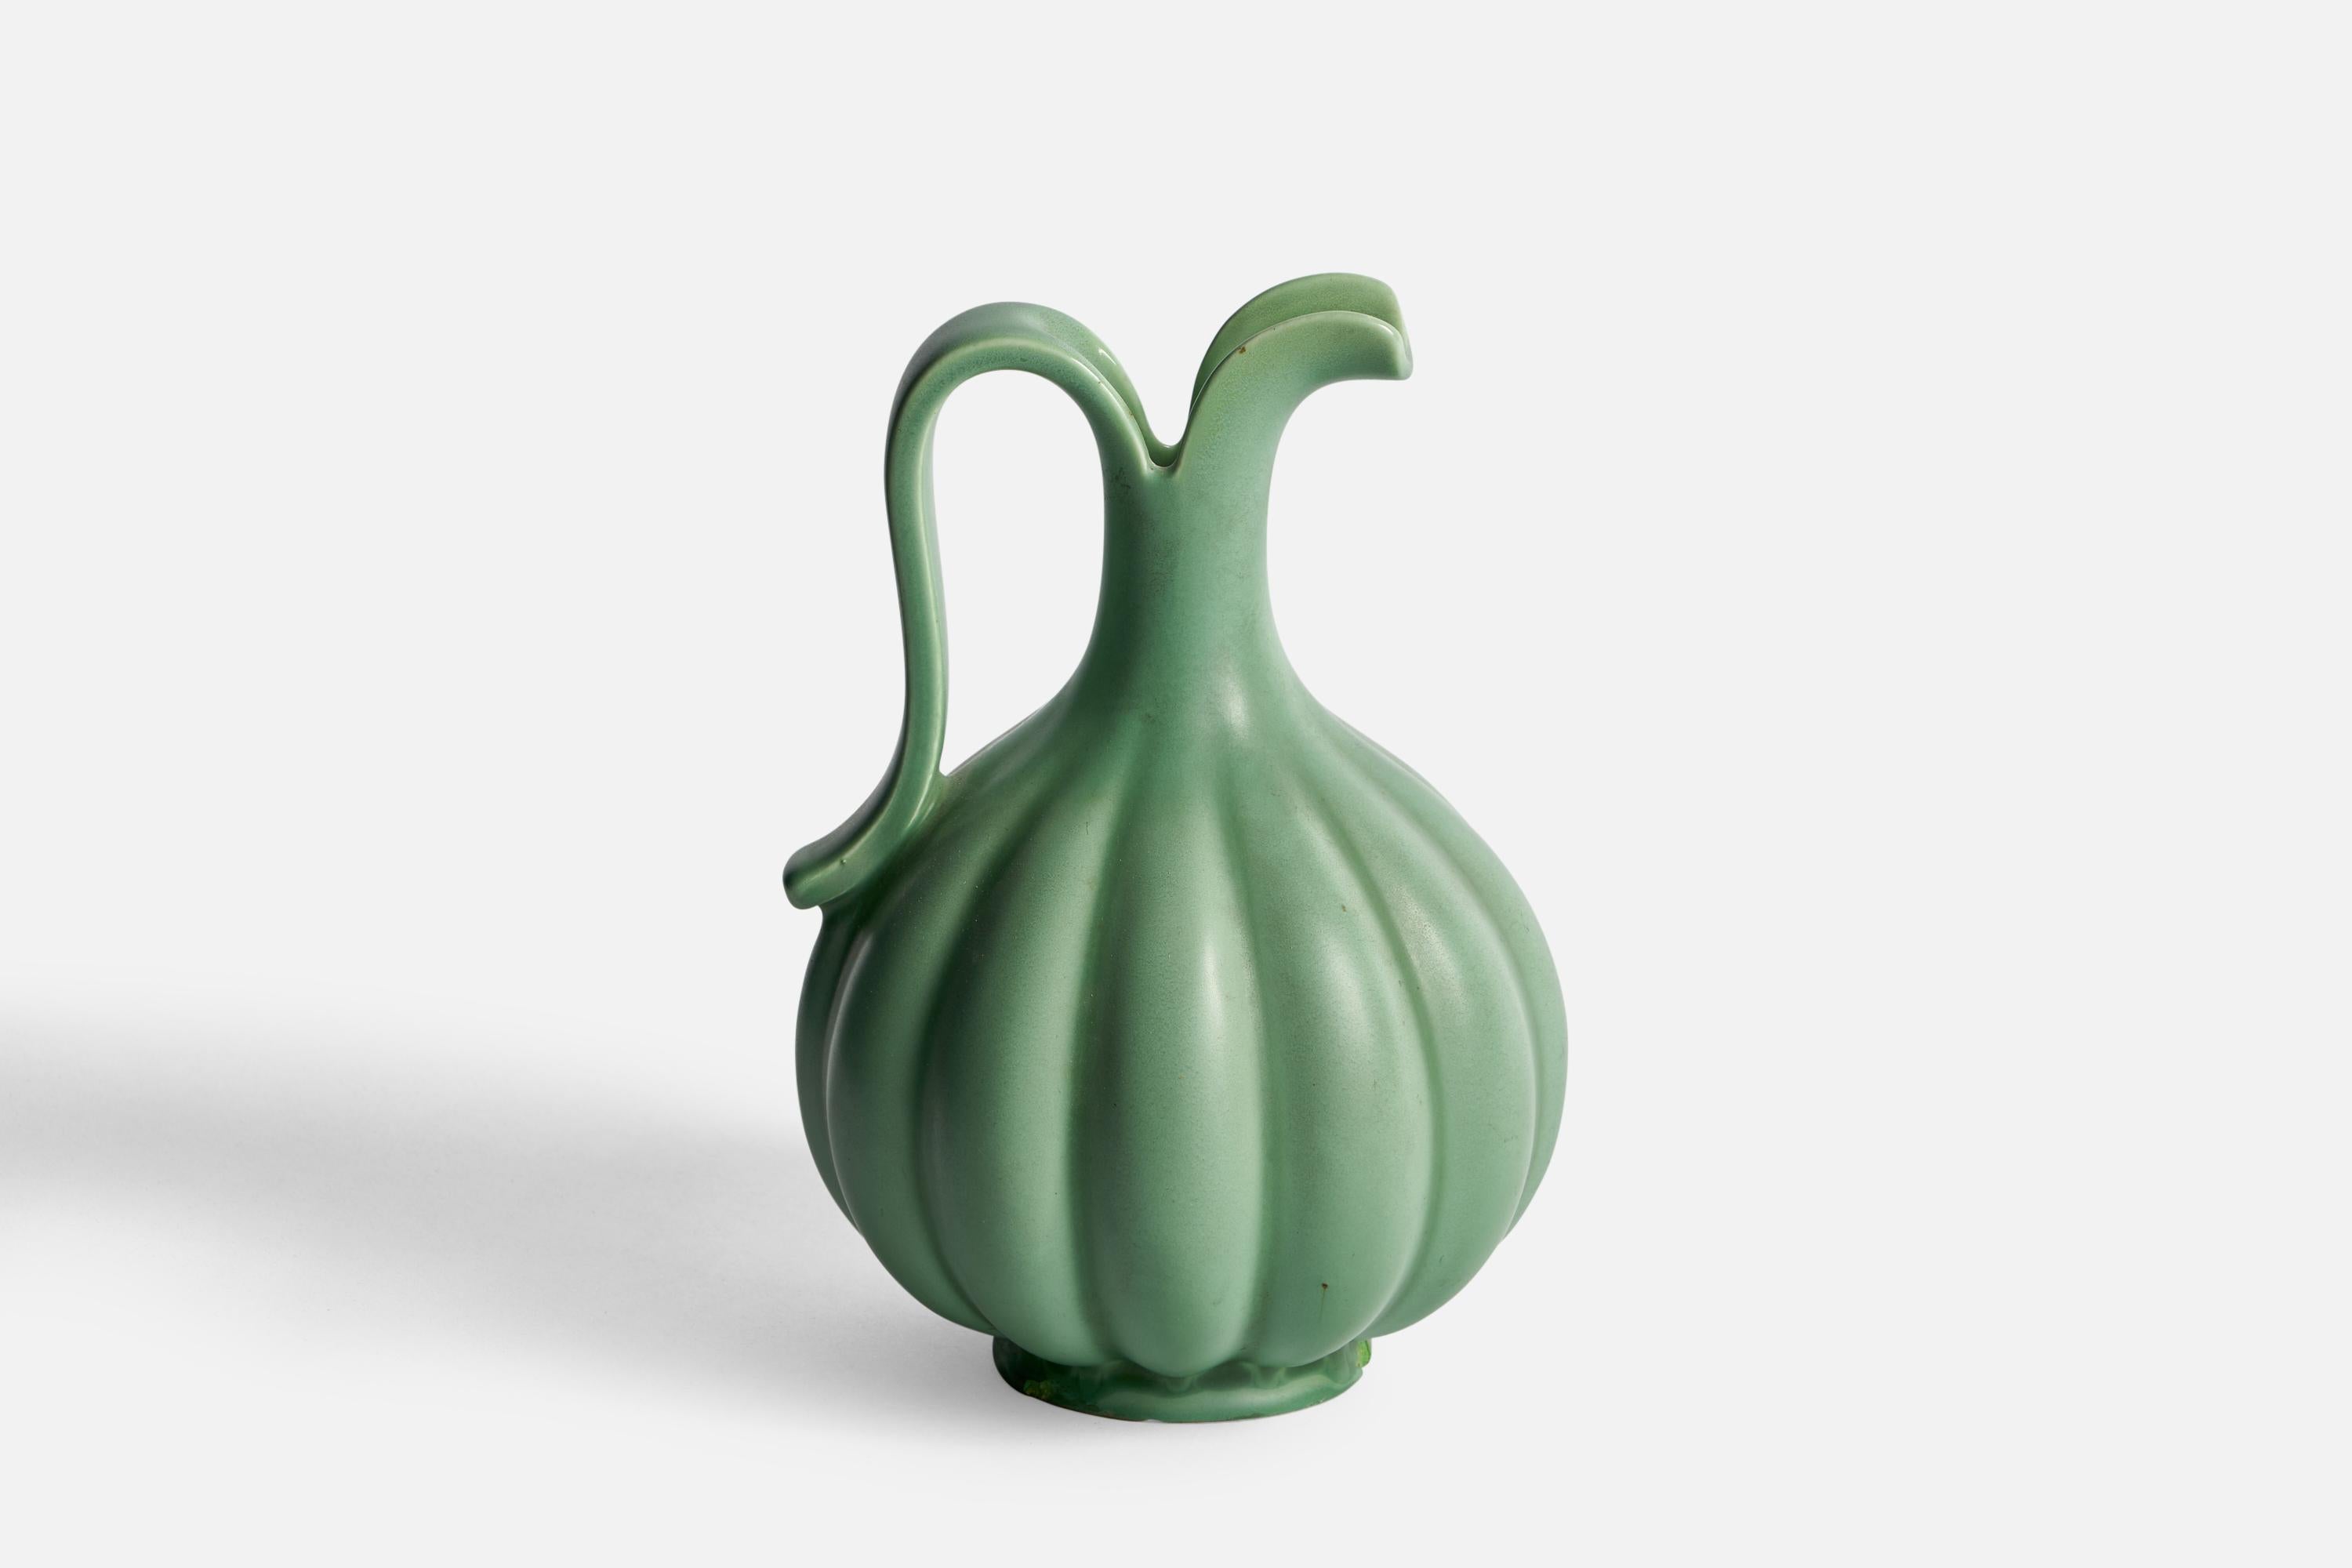 Pichet cannelé en céramique à vernis vert, conçu par Arthur Percy et produit par Gefle, Suède, années 1930.